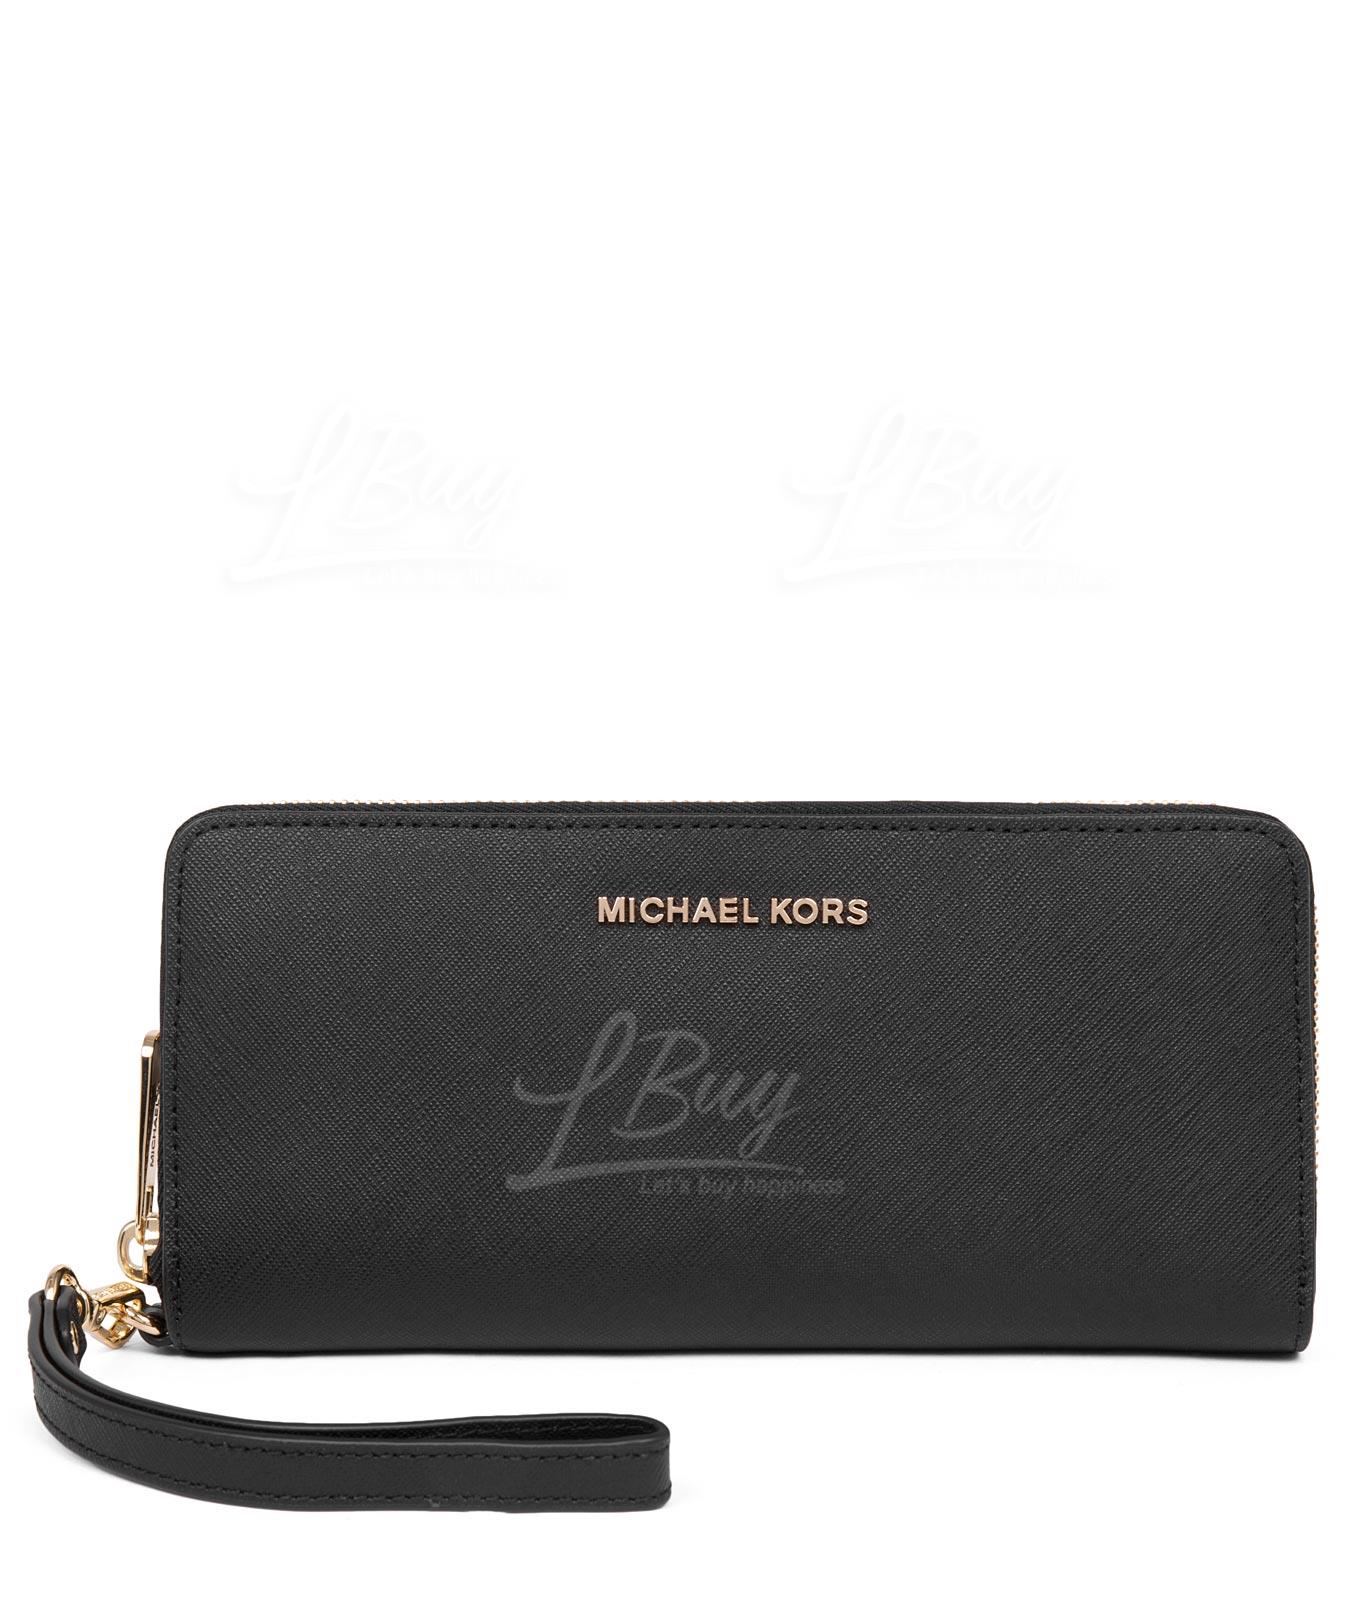 michael kors smartphone wristlet wallet